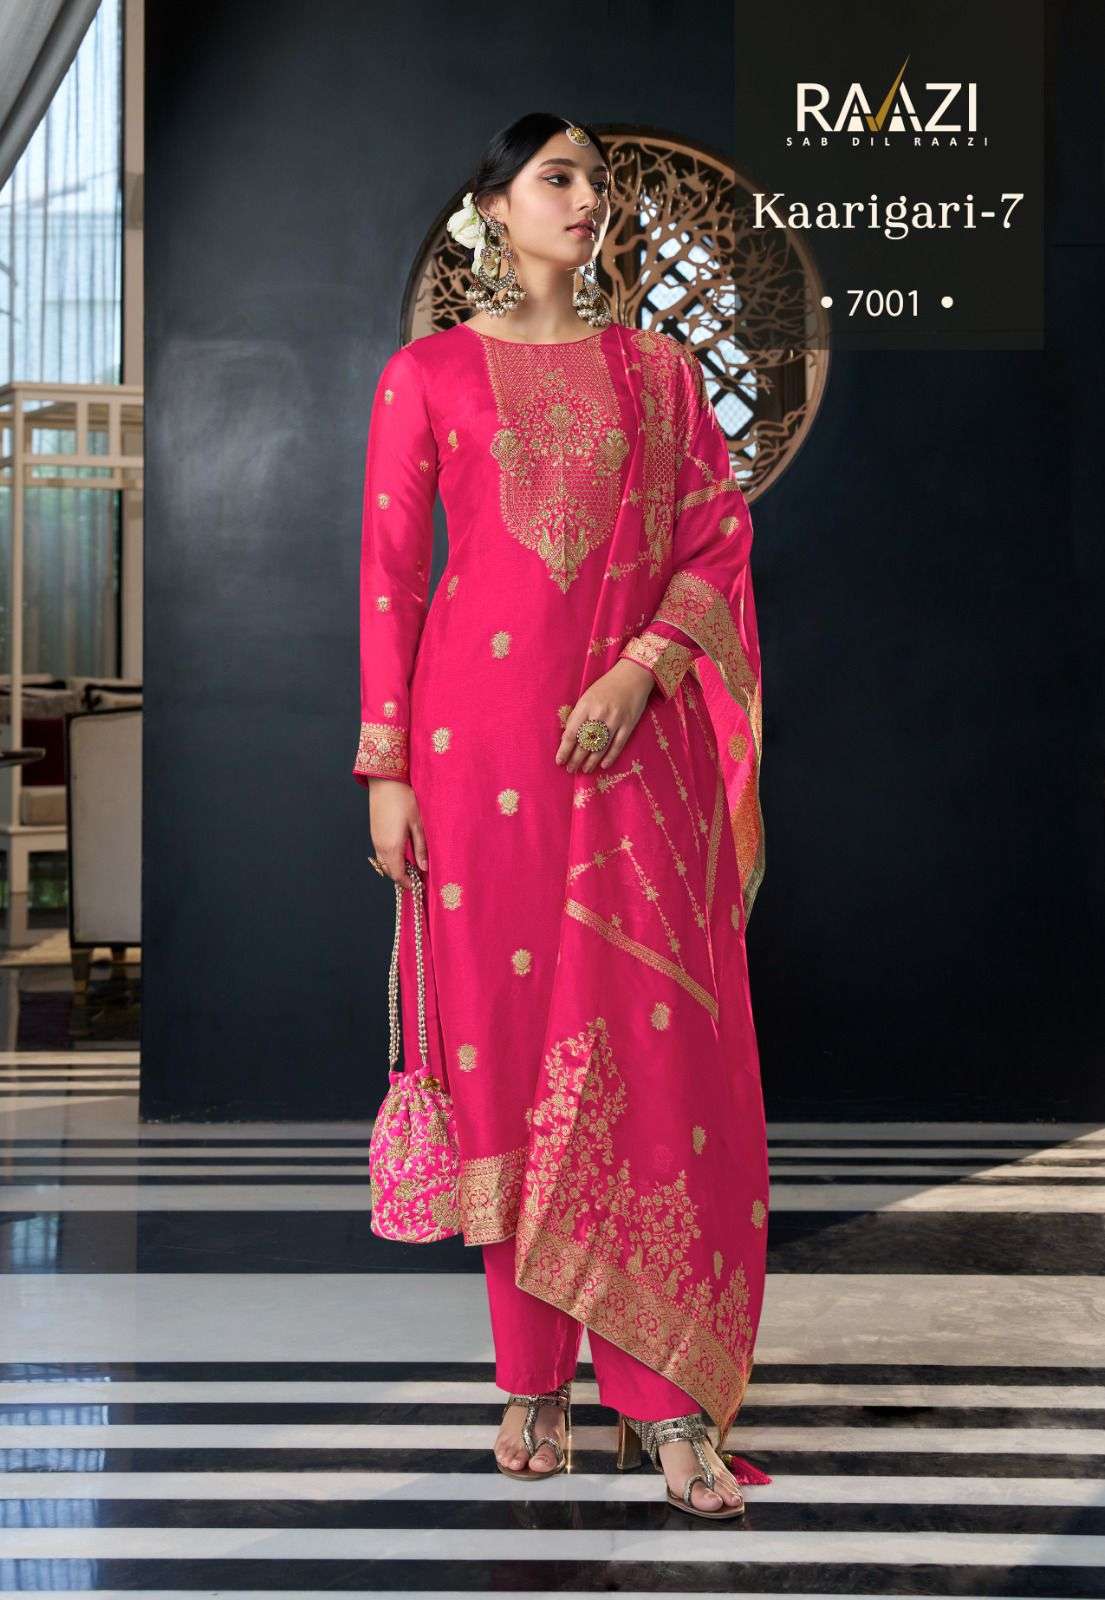 rama fashion karigari vol 7 7001 7004 series latest designer salwar kameez wholesaler surat gujarat 1 2023 09 26 15 36 30